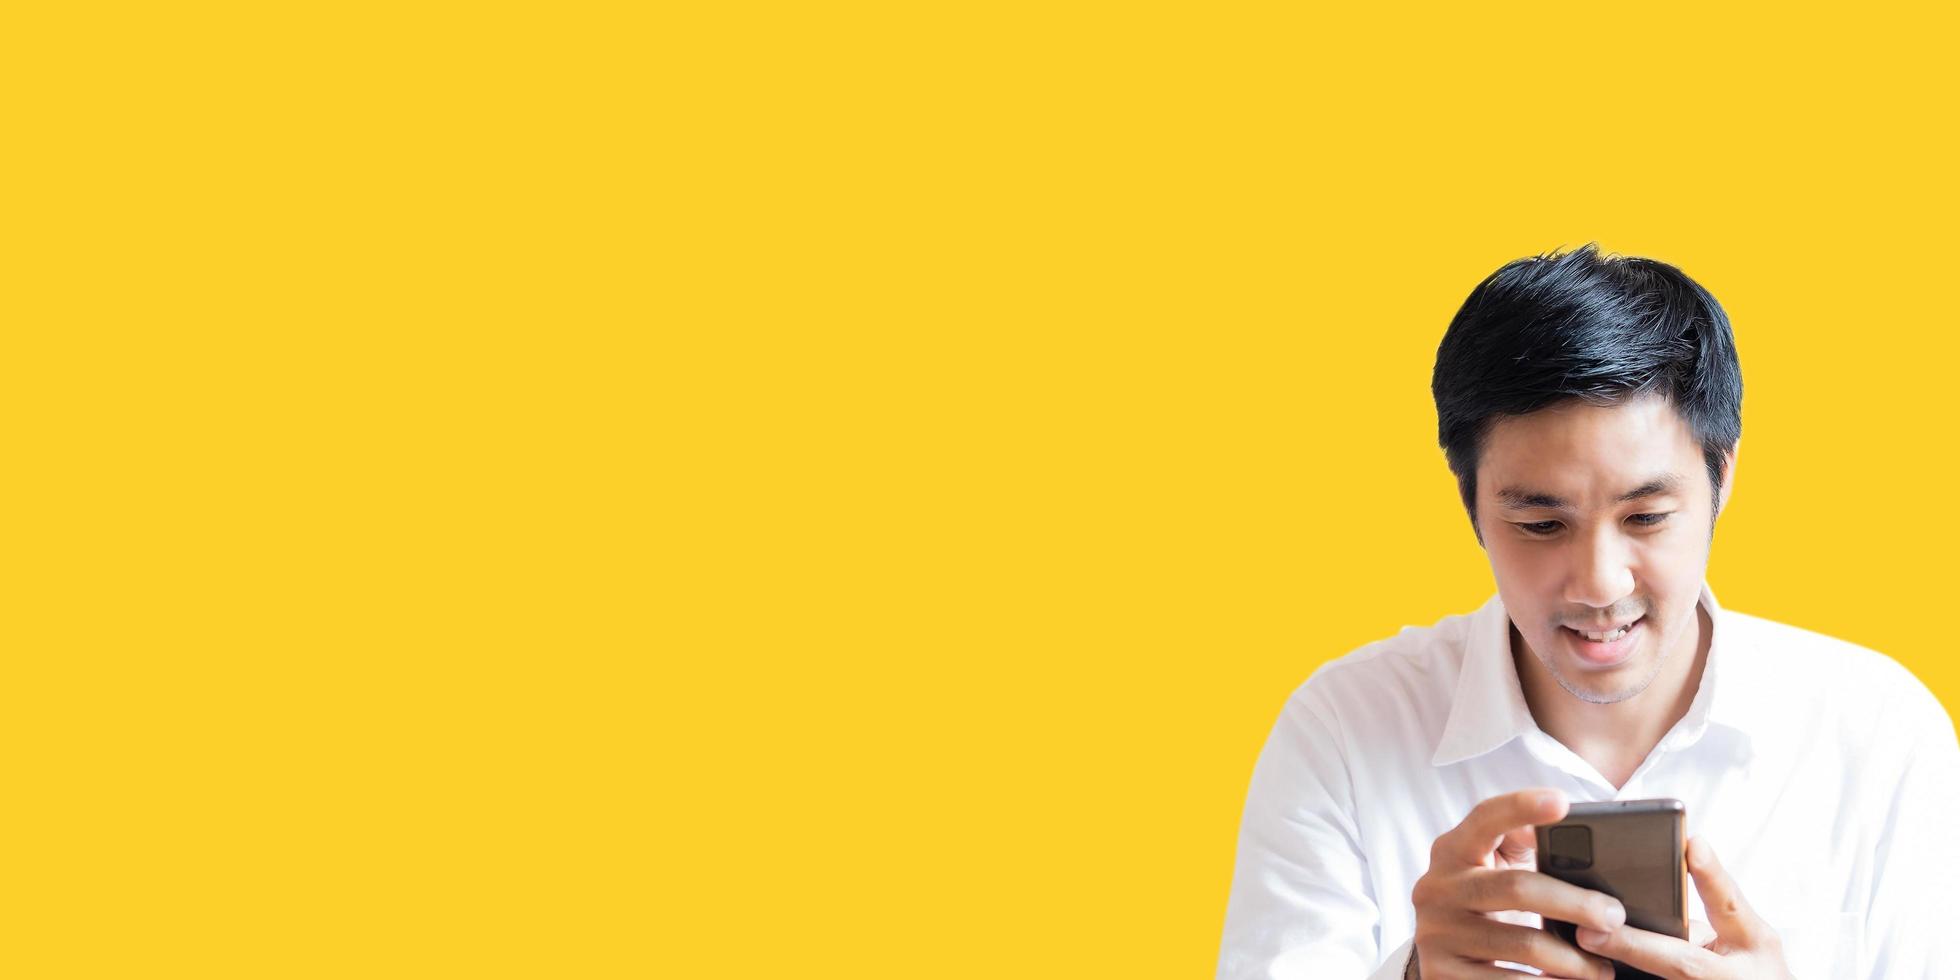 Asiatischer Mann Porträt halten Smartphone zuversichtlich Teenager-Studen Lifestyle-Leute für Geschäftsversicherungen, Verkäufer, Finanzen, Lifestyle und Geschäftsmann Porträt Menschen Kommunikationsbild foto